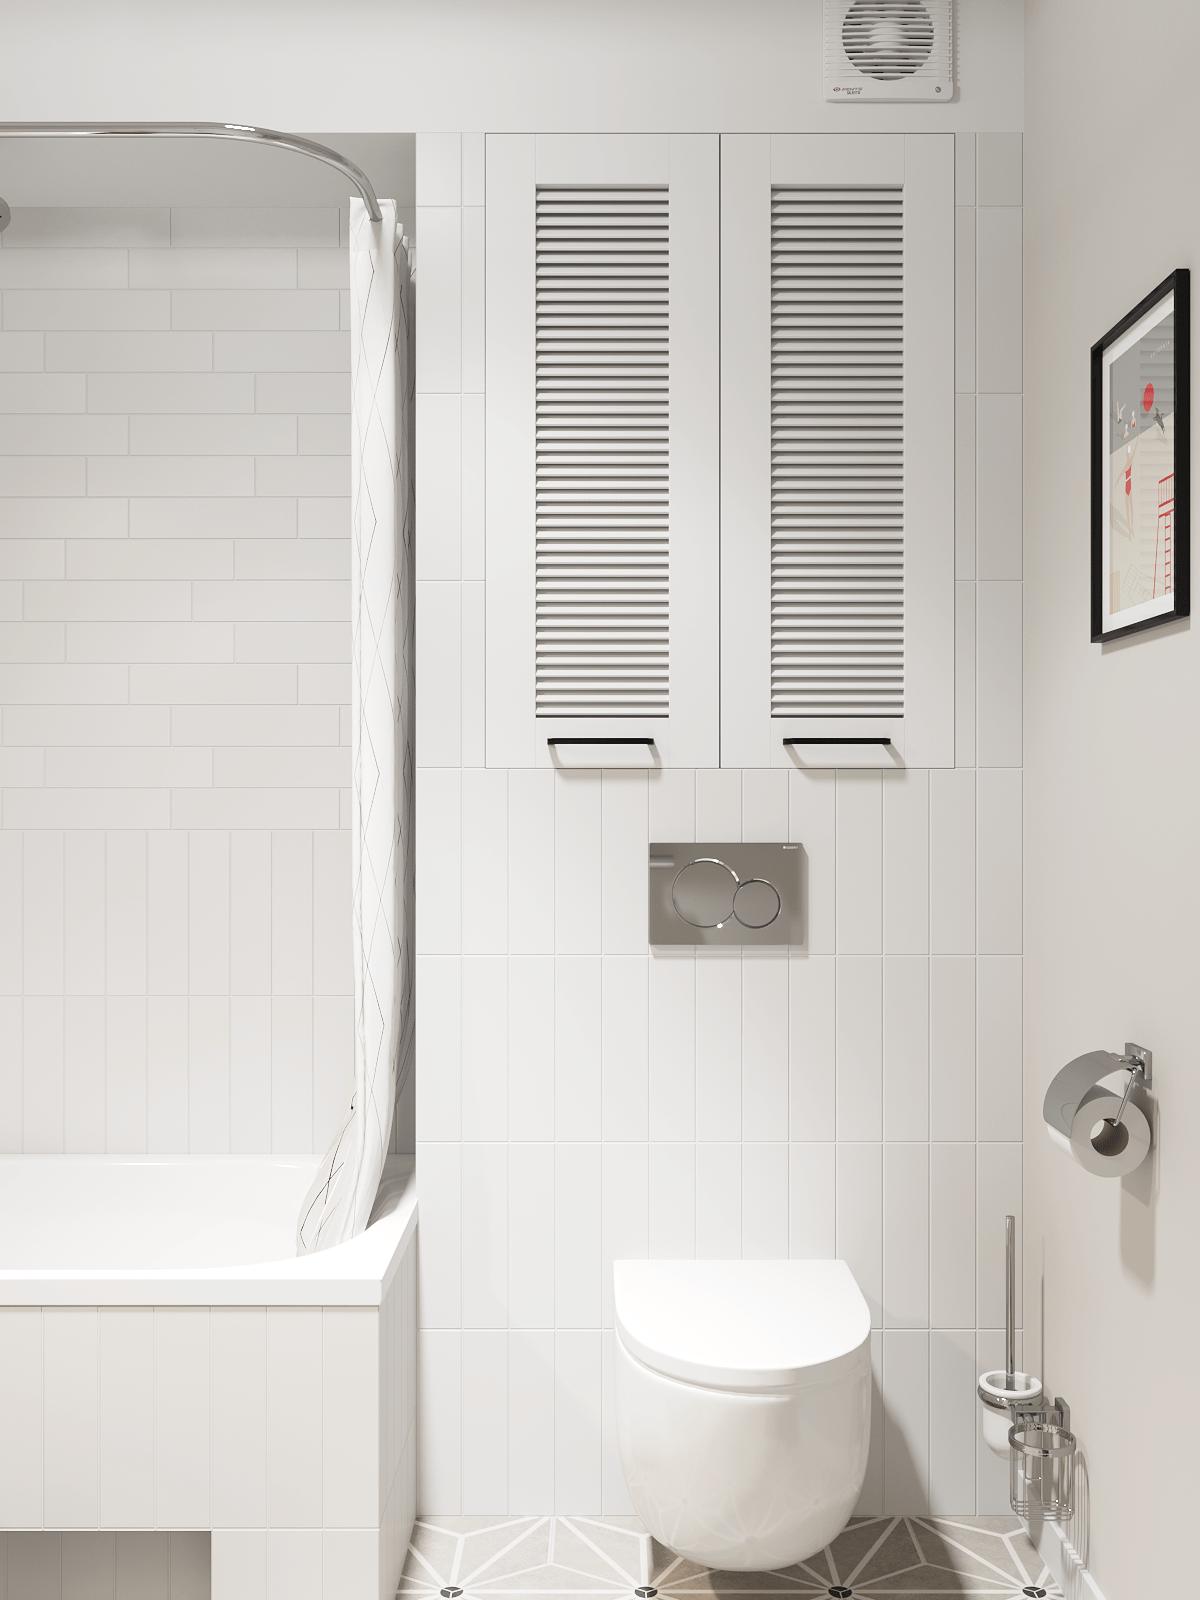 Sàn phòng tắm lát gạch bông tương tự phòng bếp để dễ dàng vệ sinh. Bên trên bồn toilet là tủ lưu trữ với sắc trắng đồng màu tường nên không gây cảm giác chật chội.